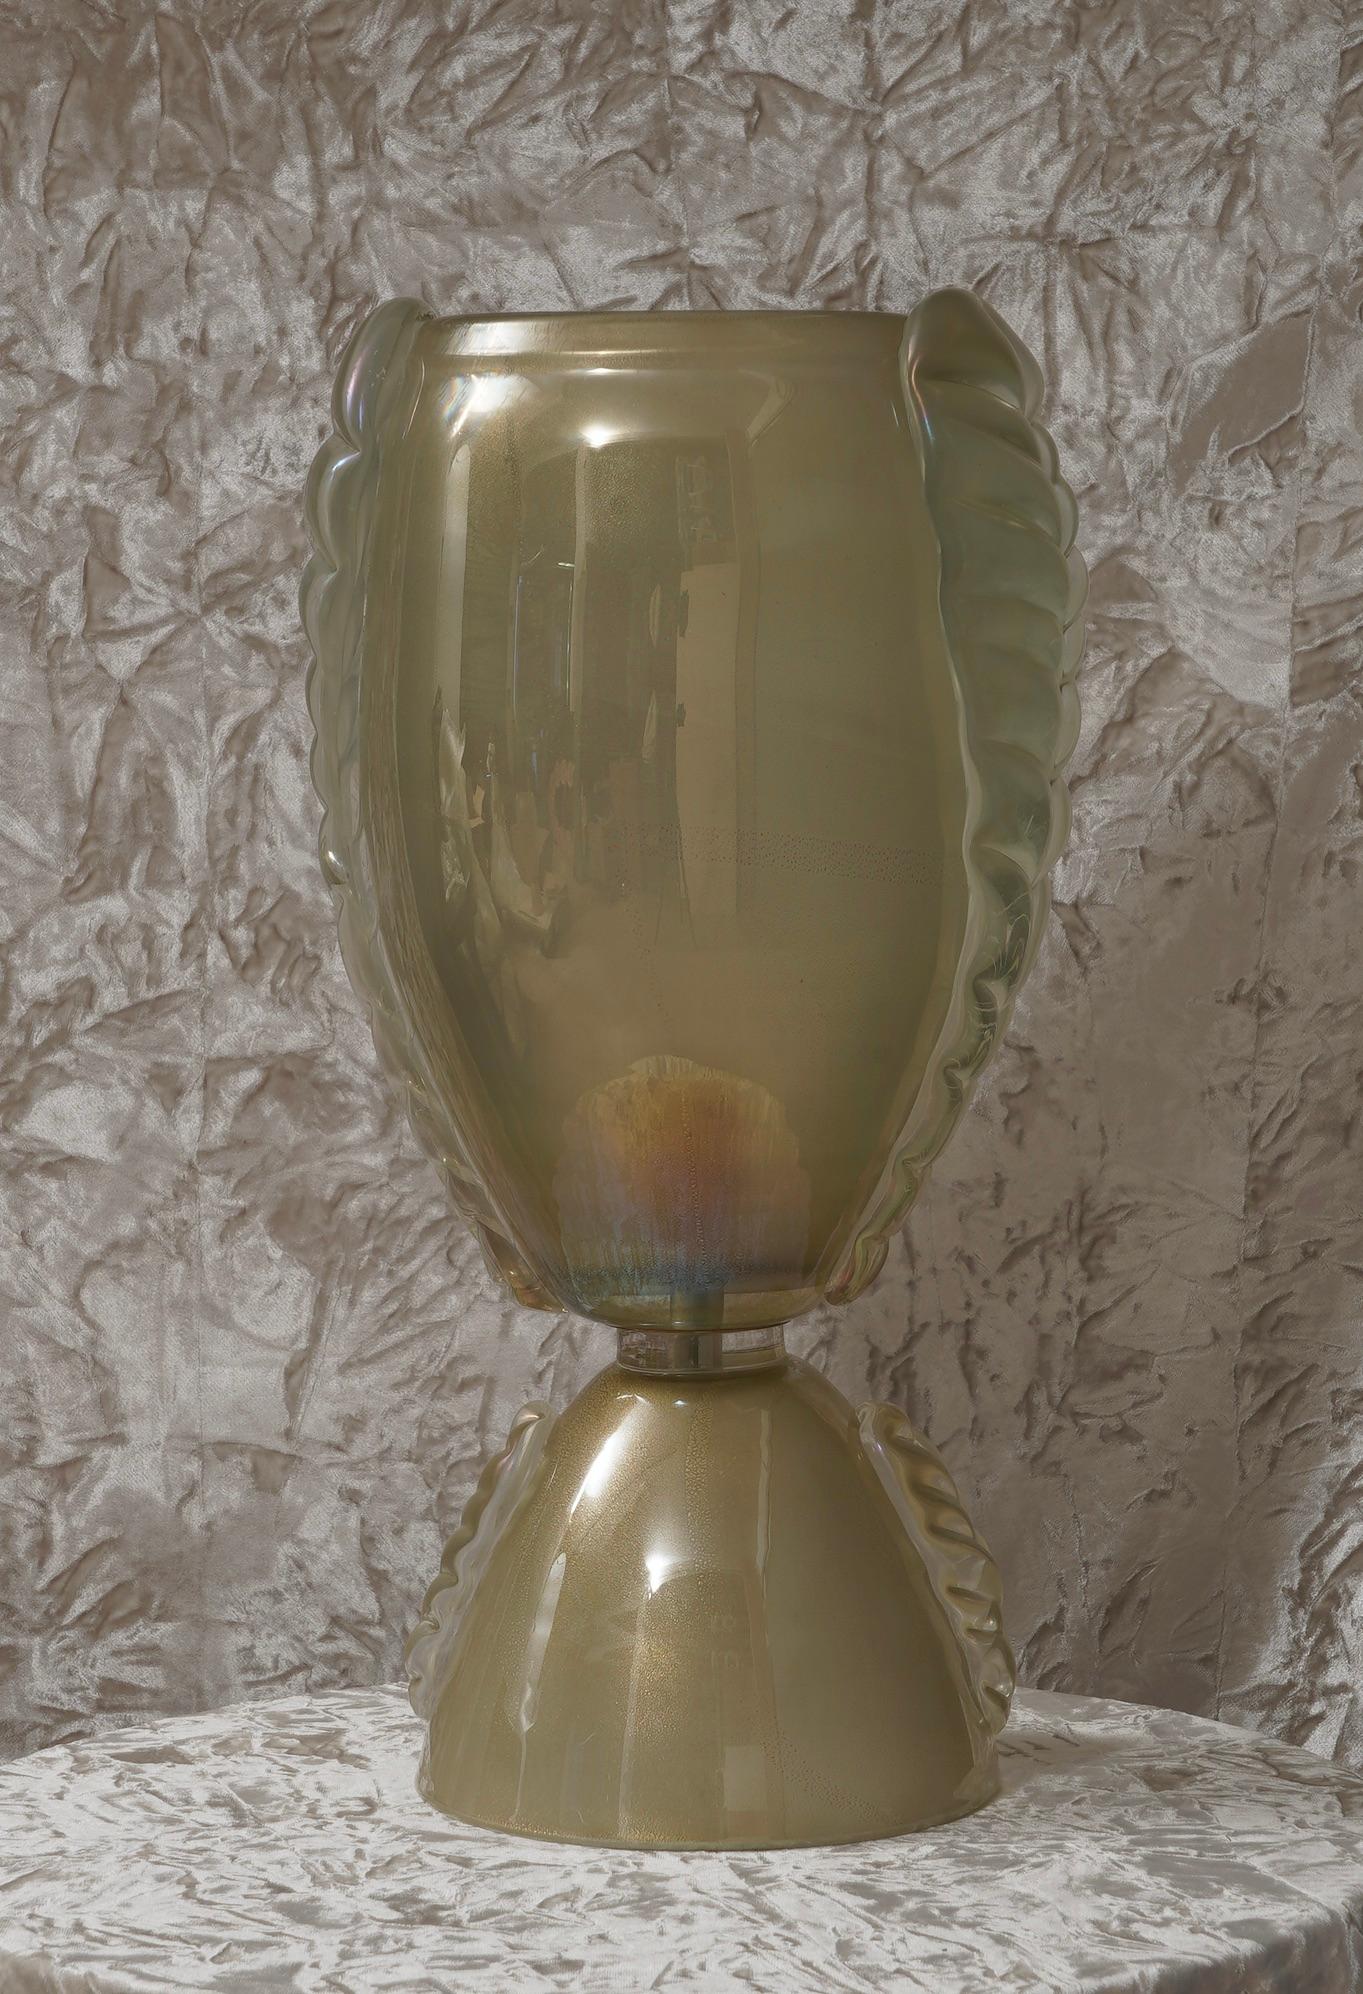 Magnifique lampe de table de Murano dans le style de Barovier&Toso. Les fours Murano créent un design intemporel incontestable. Une couleur vert-or irisée suprême avec de l'or à l'intérieur.

La lampe de table est composée d'une grande coupelle